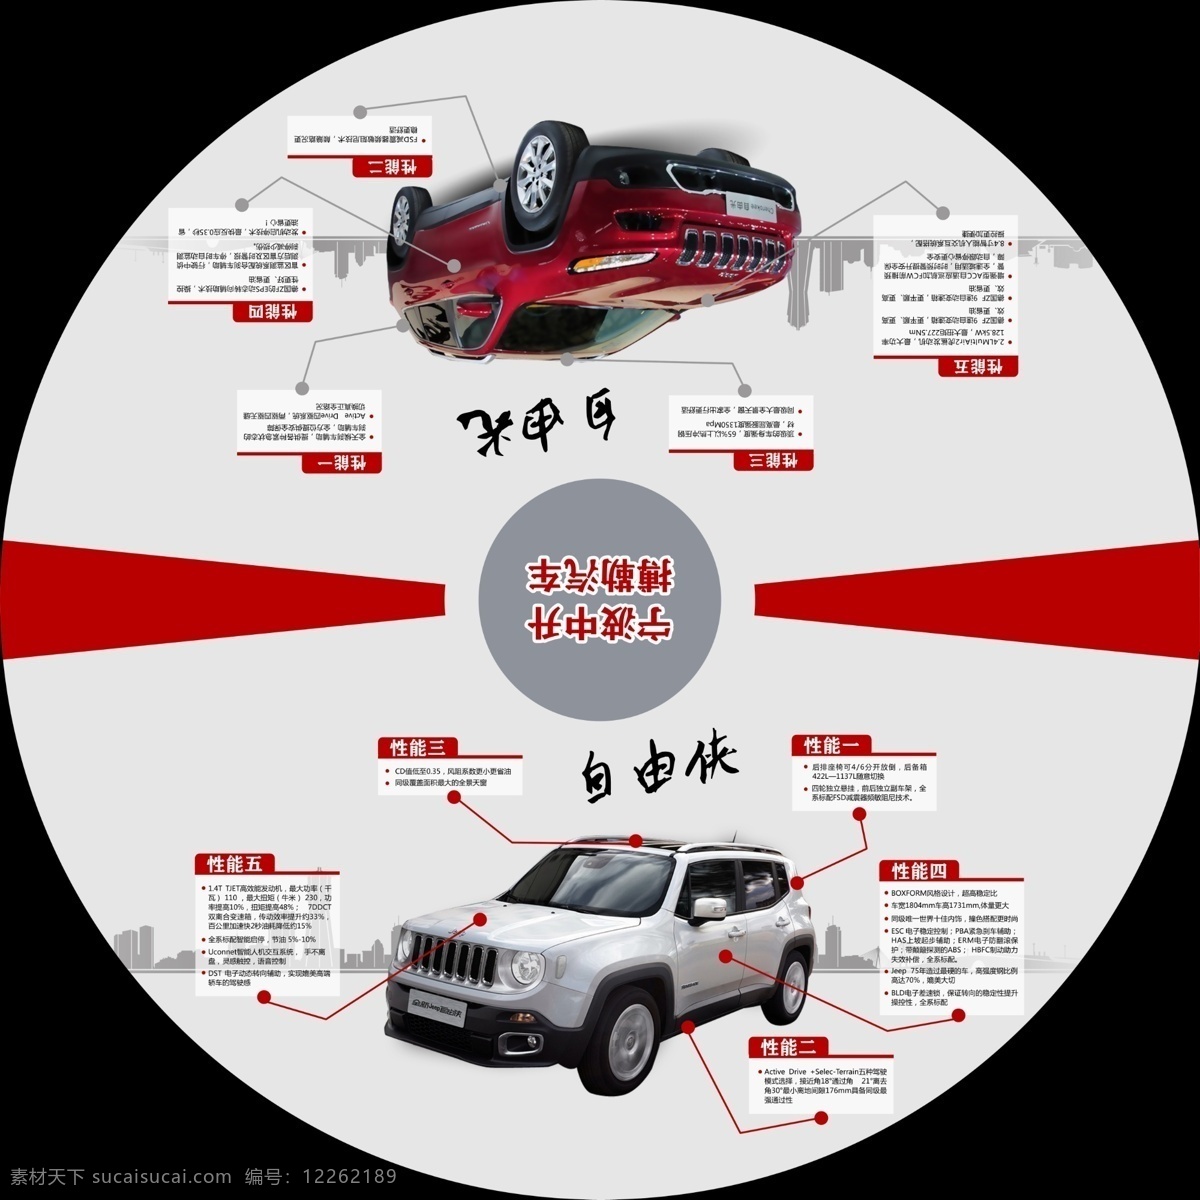 宁波中升桌贴 桌贴 地贴 汽车 jeep 轿车 小型自动汽车 长城 城市 品牌 跑车 宣传 广告 海报广告 展板模板